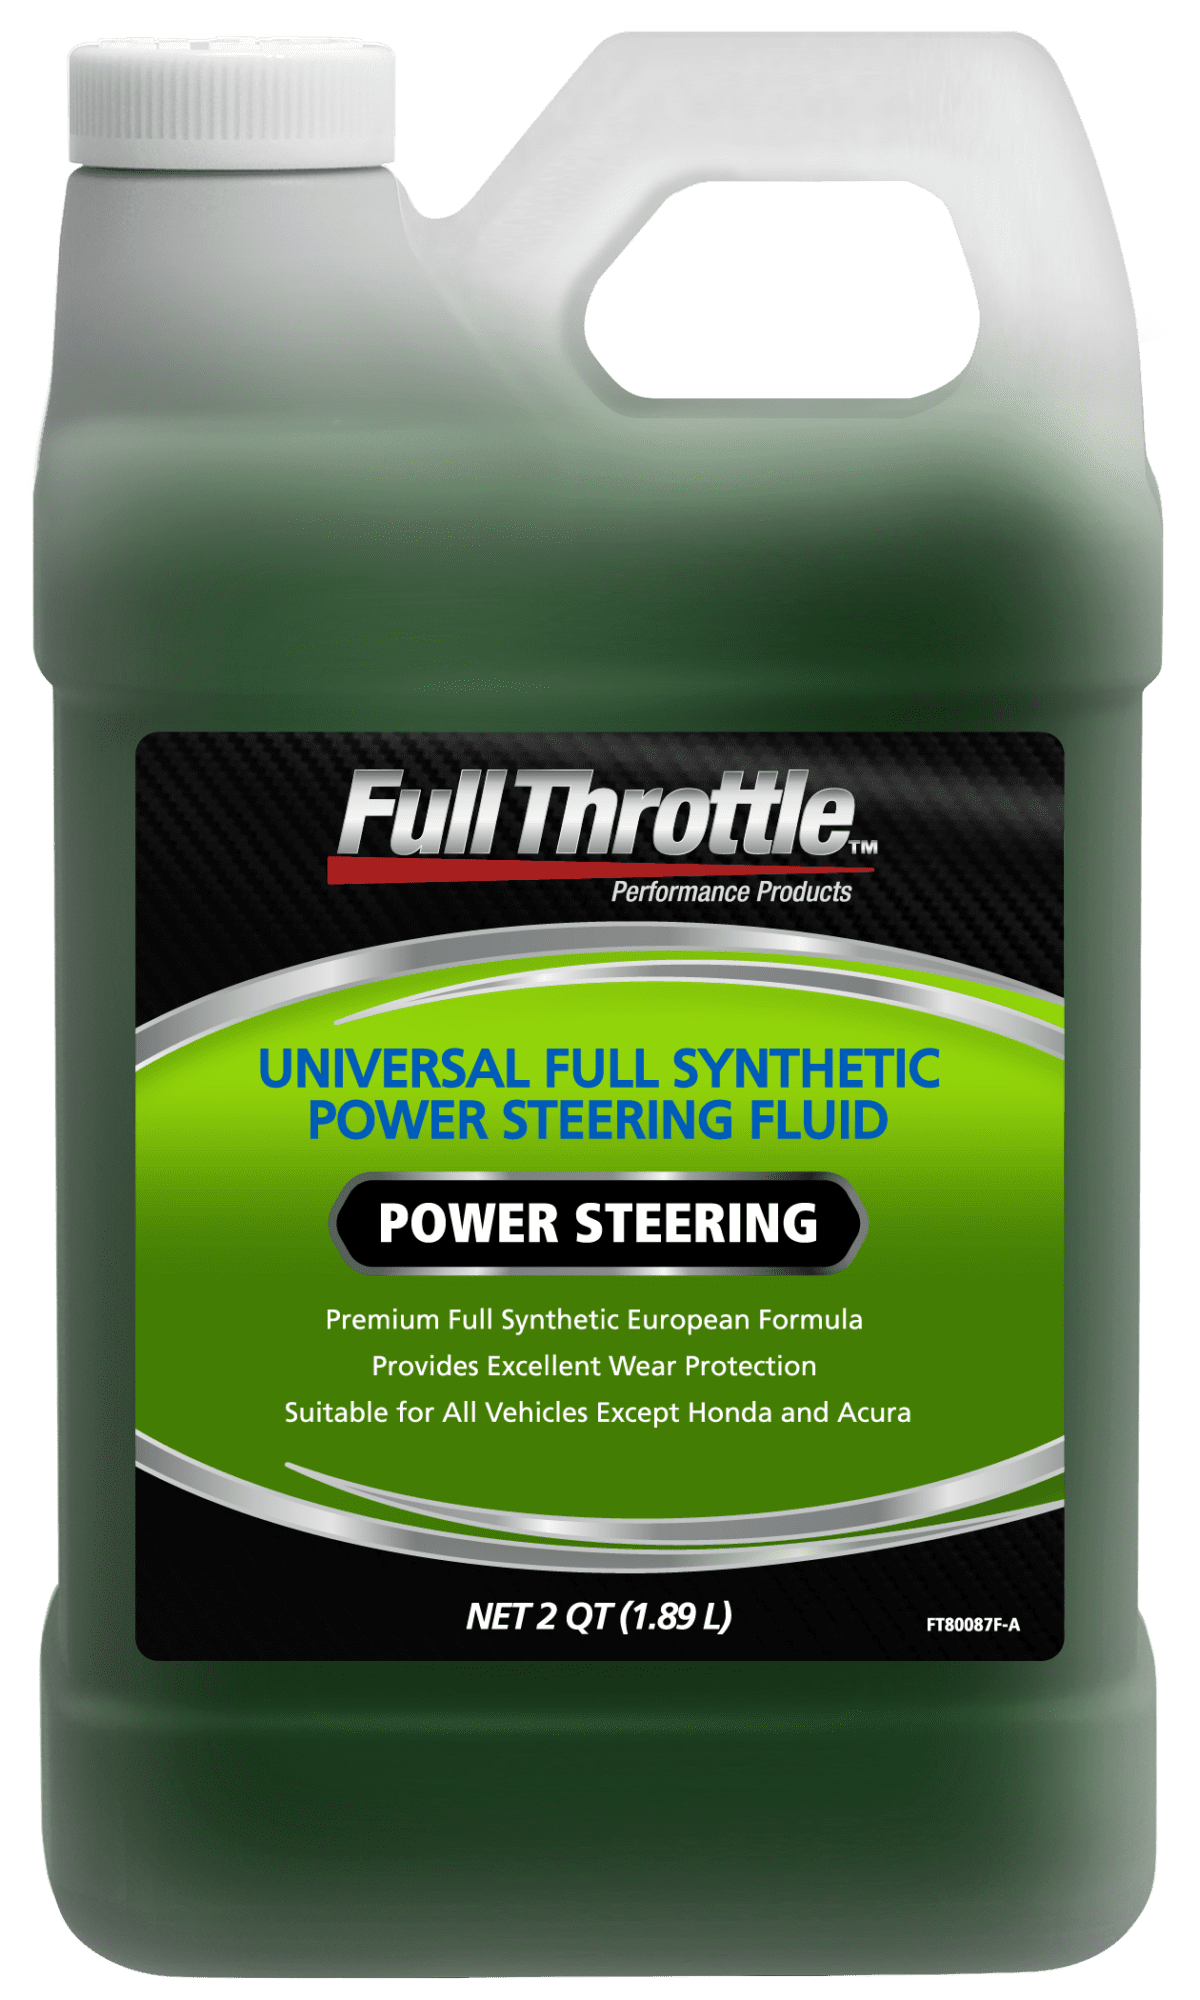 Full Throttle™ Universal Full Synthetic Power Steering Fluid